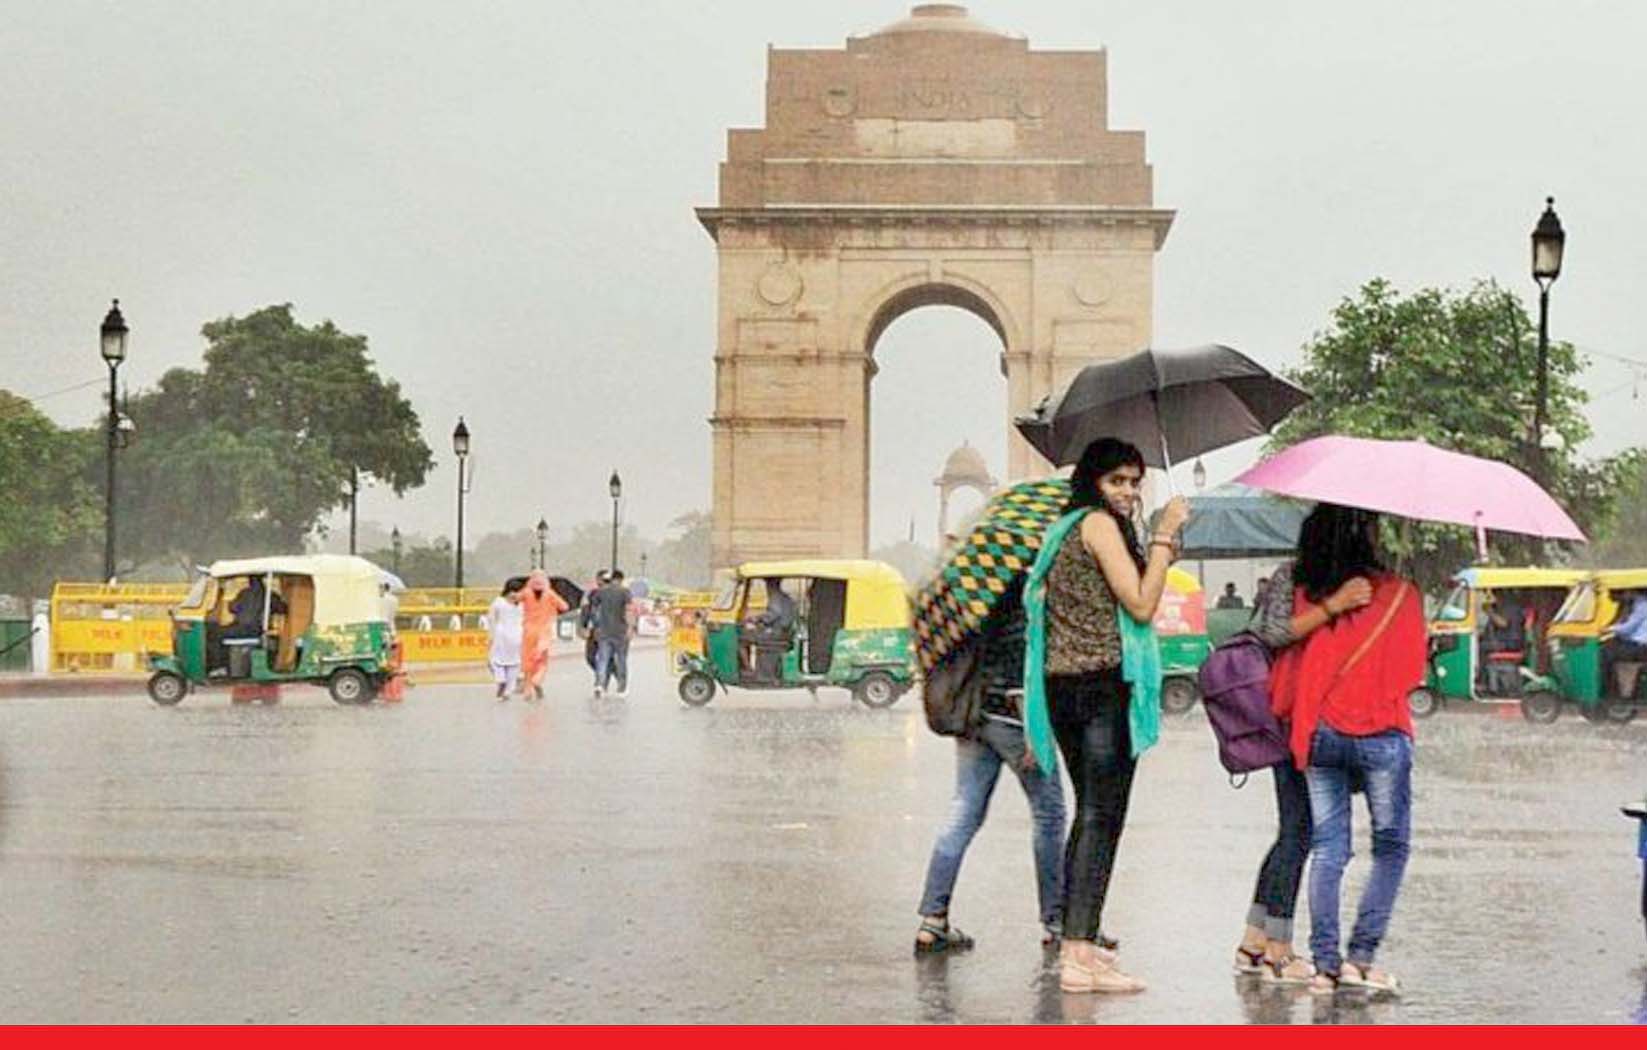 दिल्ली-एनसीआर में सुबह तूफान के साथ मूसलाधार बारिश, एयरपोर्ट पर विमानों का परिचालन प्रभावित